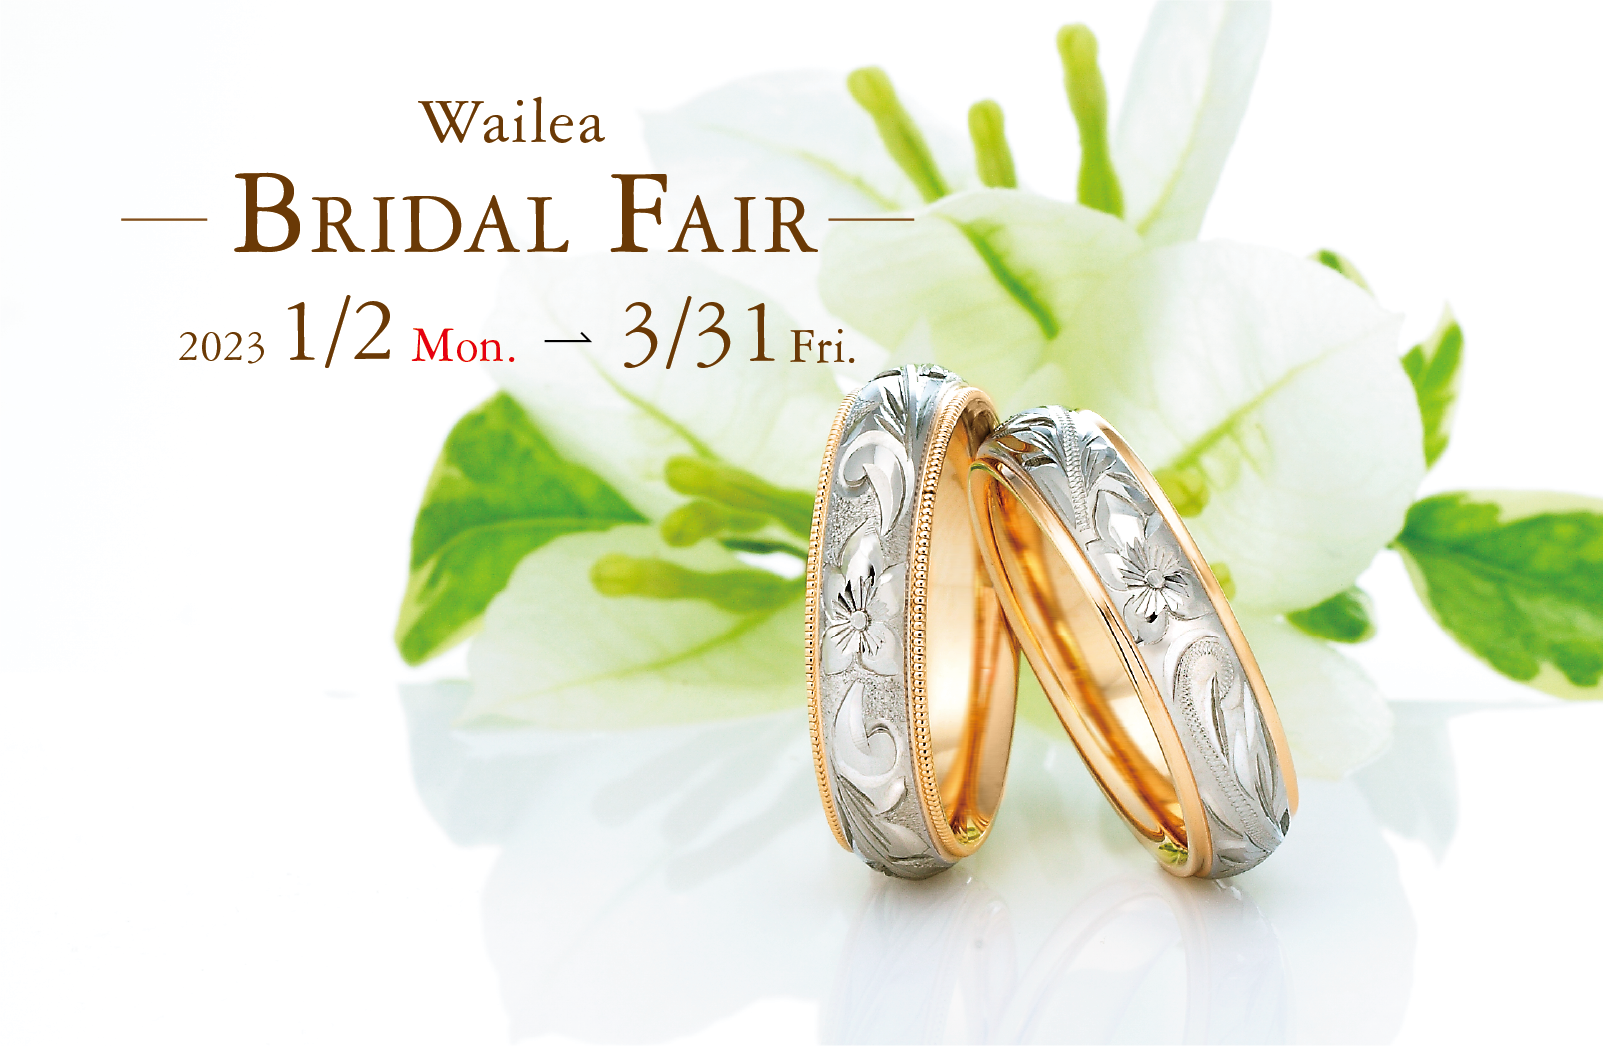 Wailea Bridal Fair 開催中! – The Hawaiian Jewelry Wailea